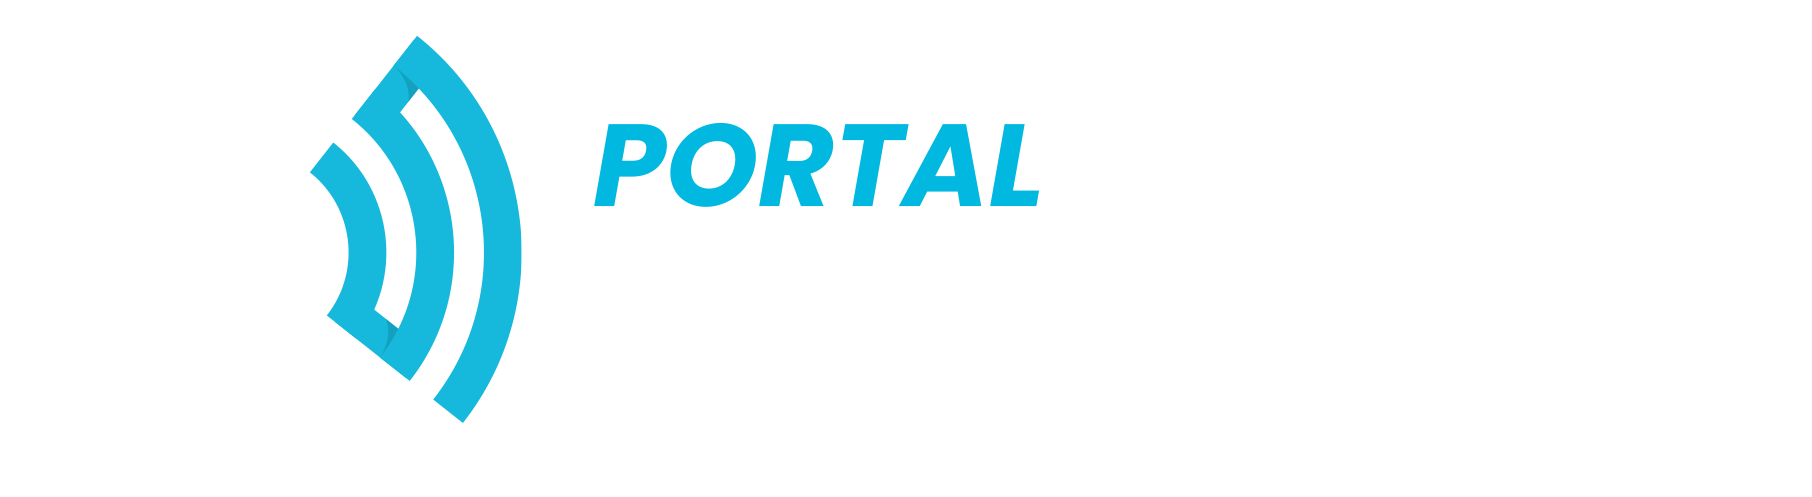 (c) Conteudolocal.com.br